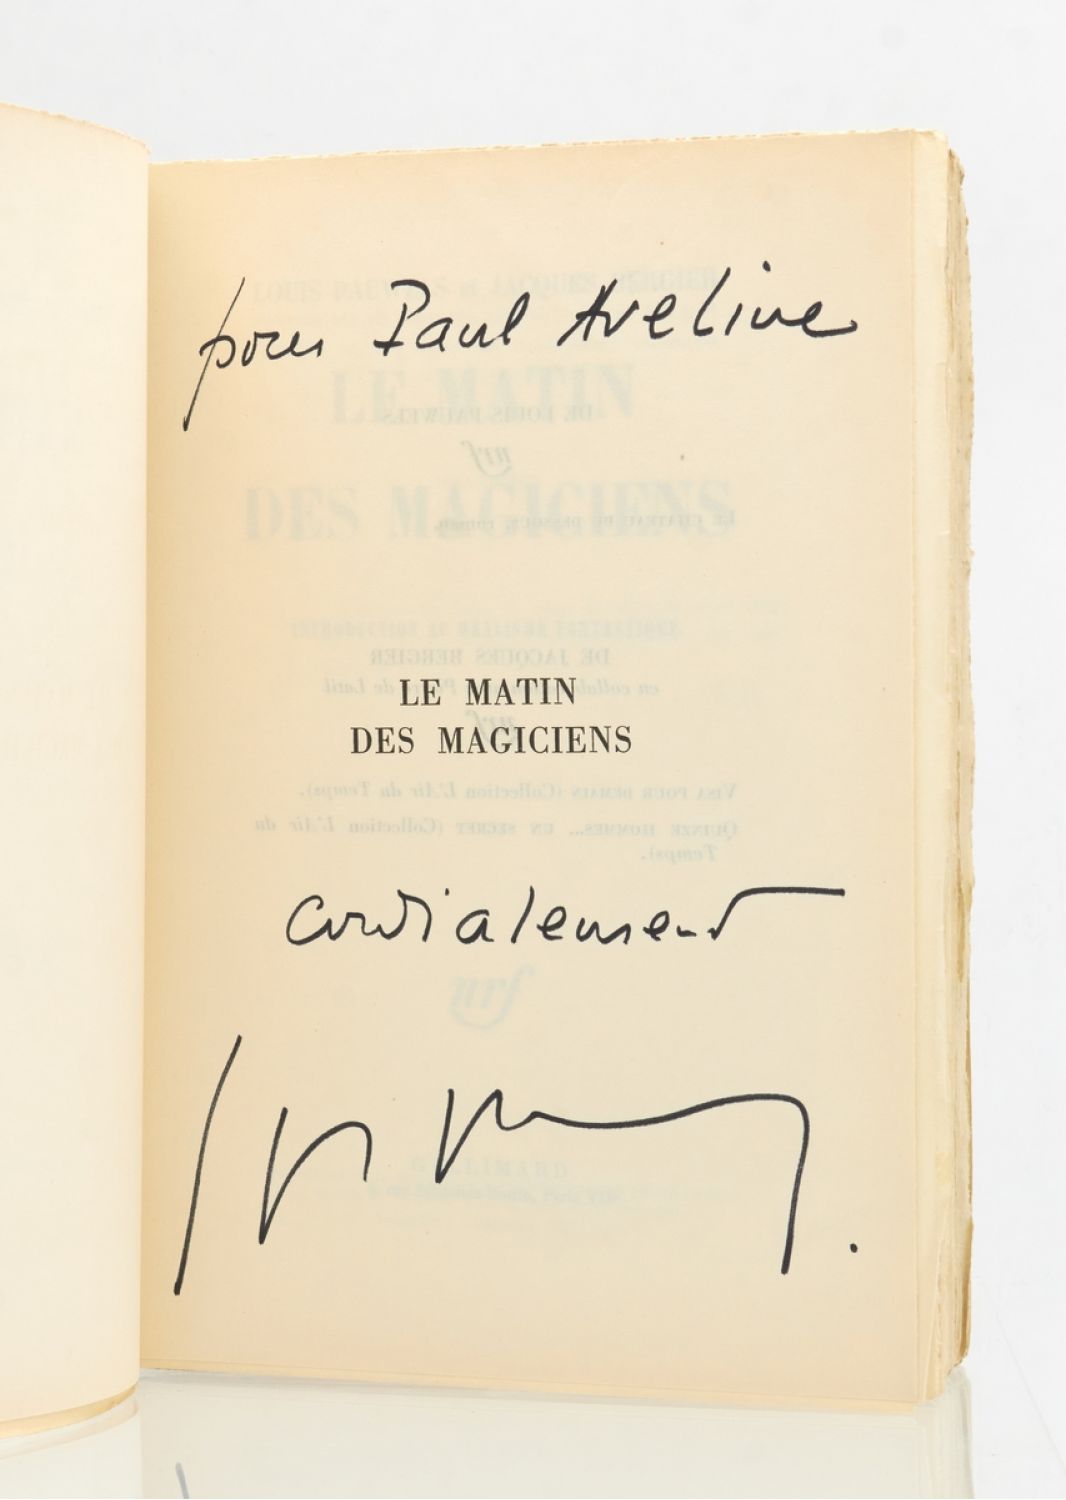 Le Matin des magiciens by BERGIER PAUWELS